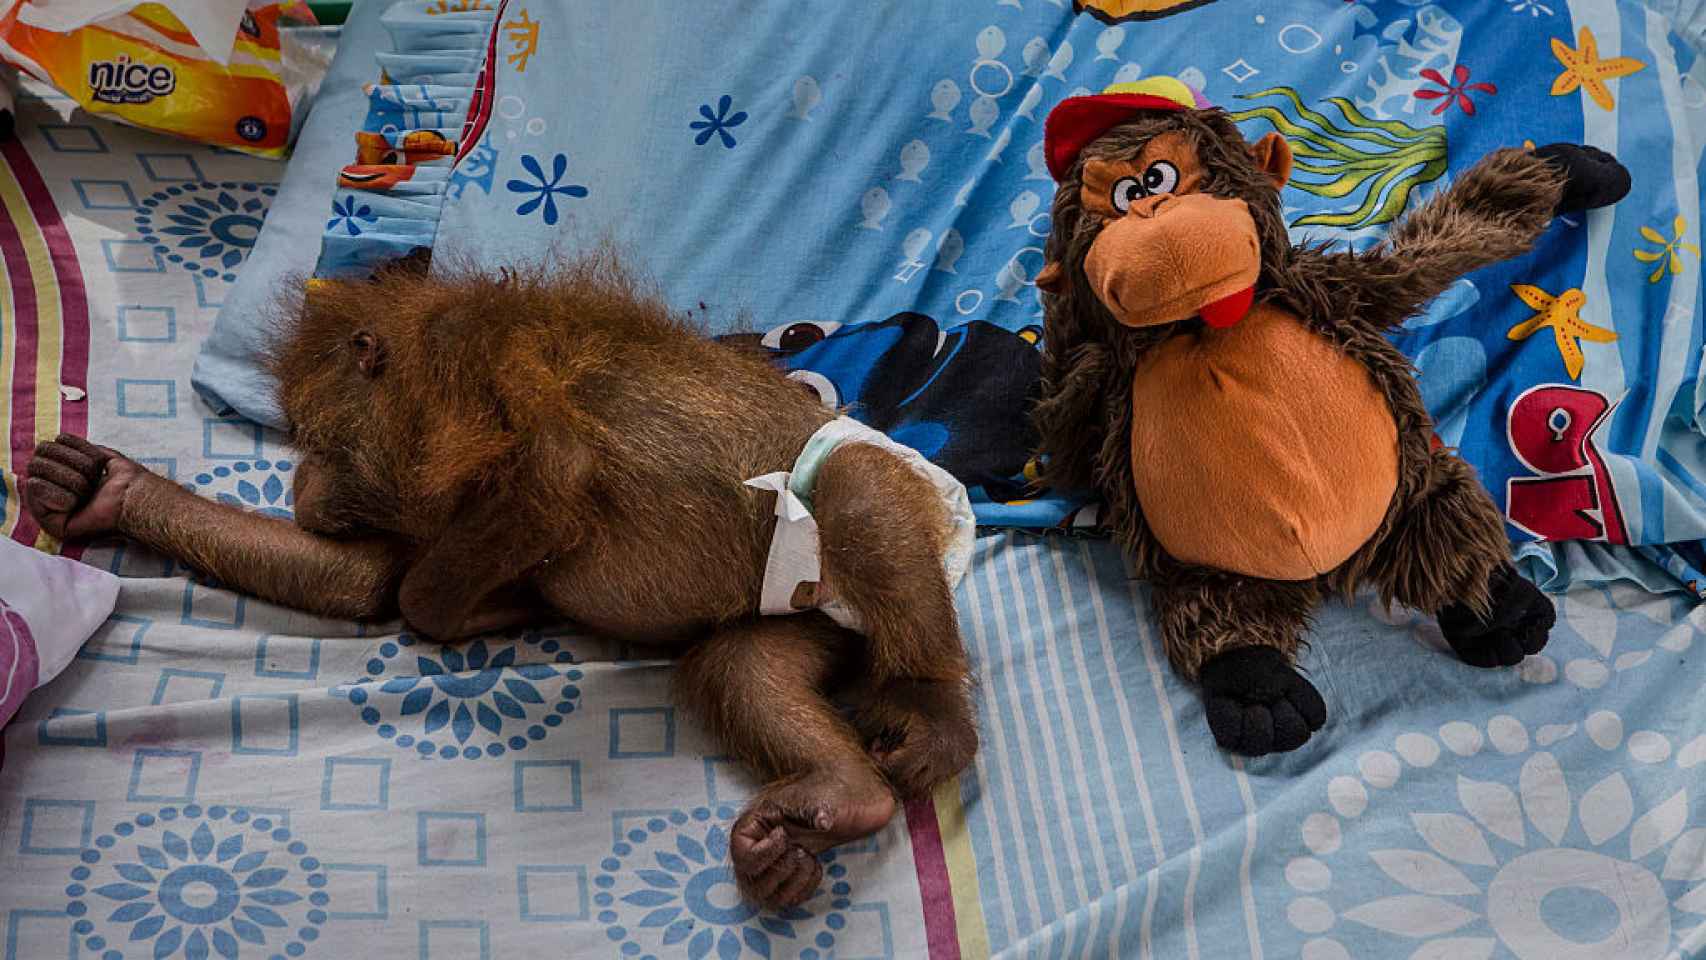 Bebé orangutan en un albergue indonesio tras perder su hábitat por deforestación.